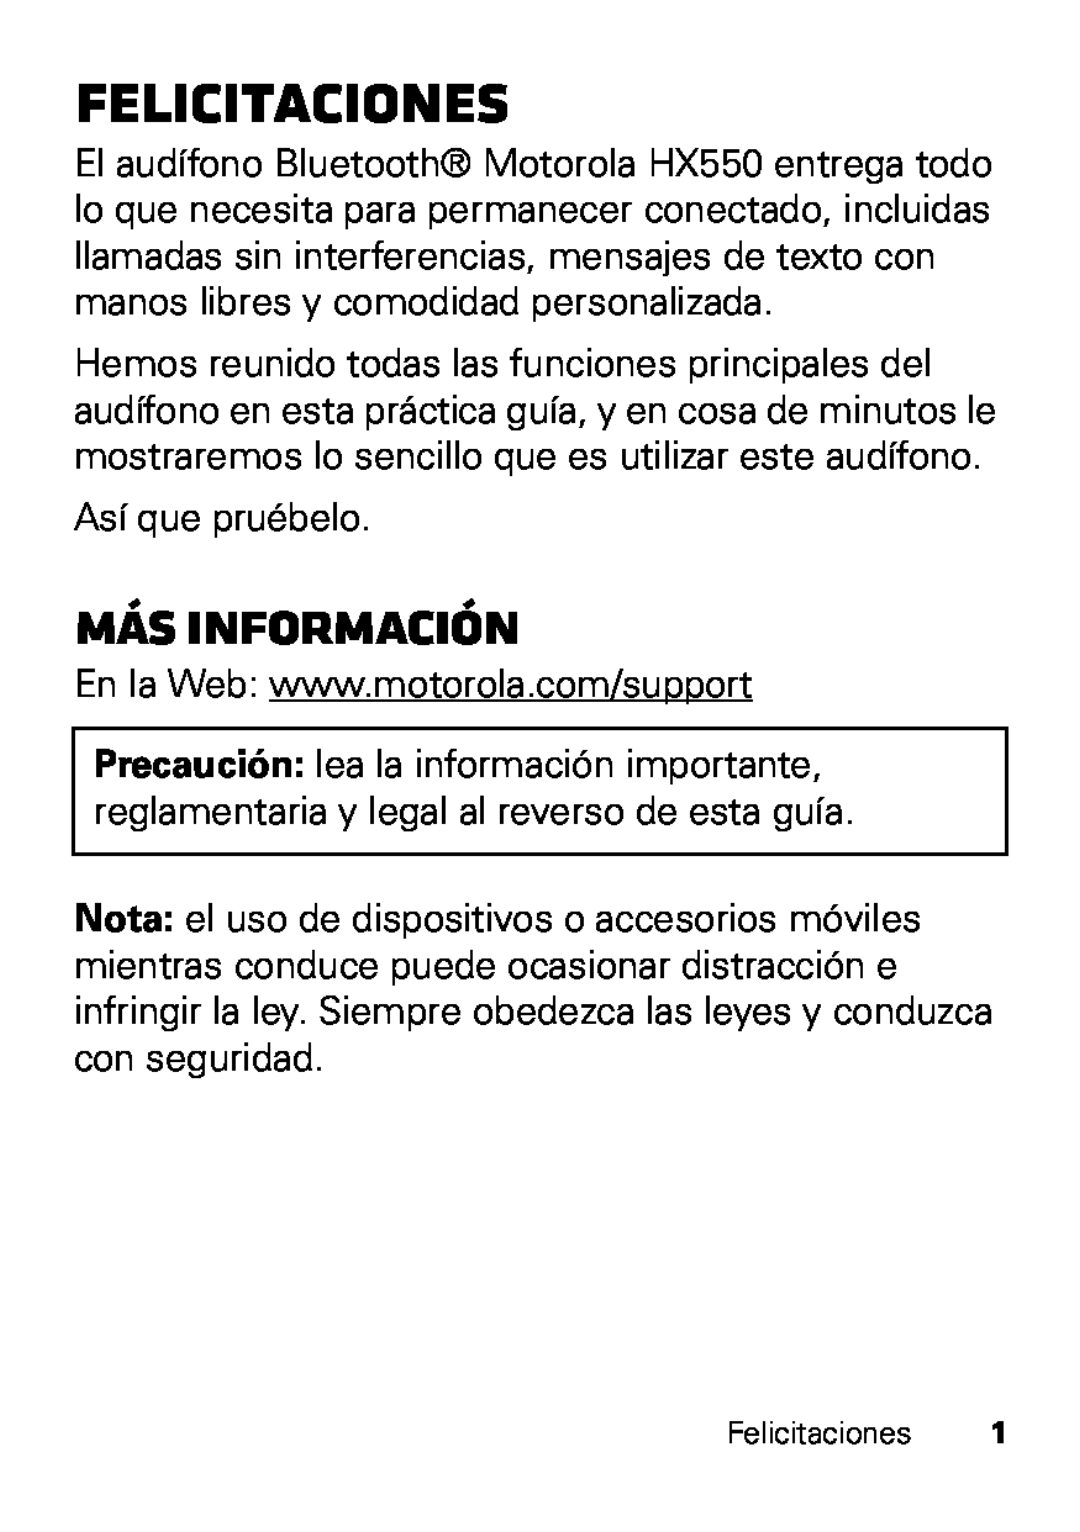 Motorola HX550 manual Felicitaciones, más información 